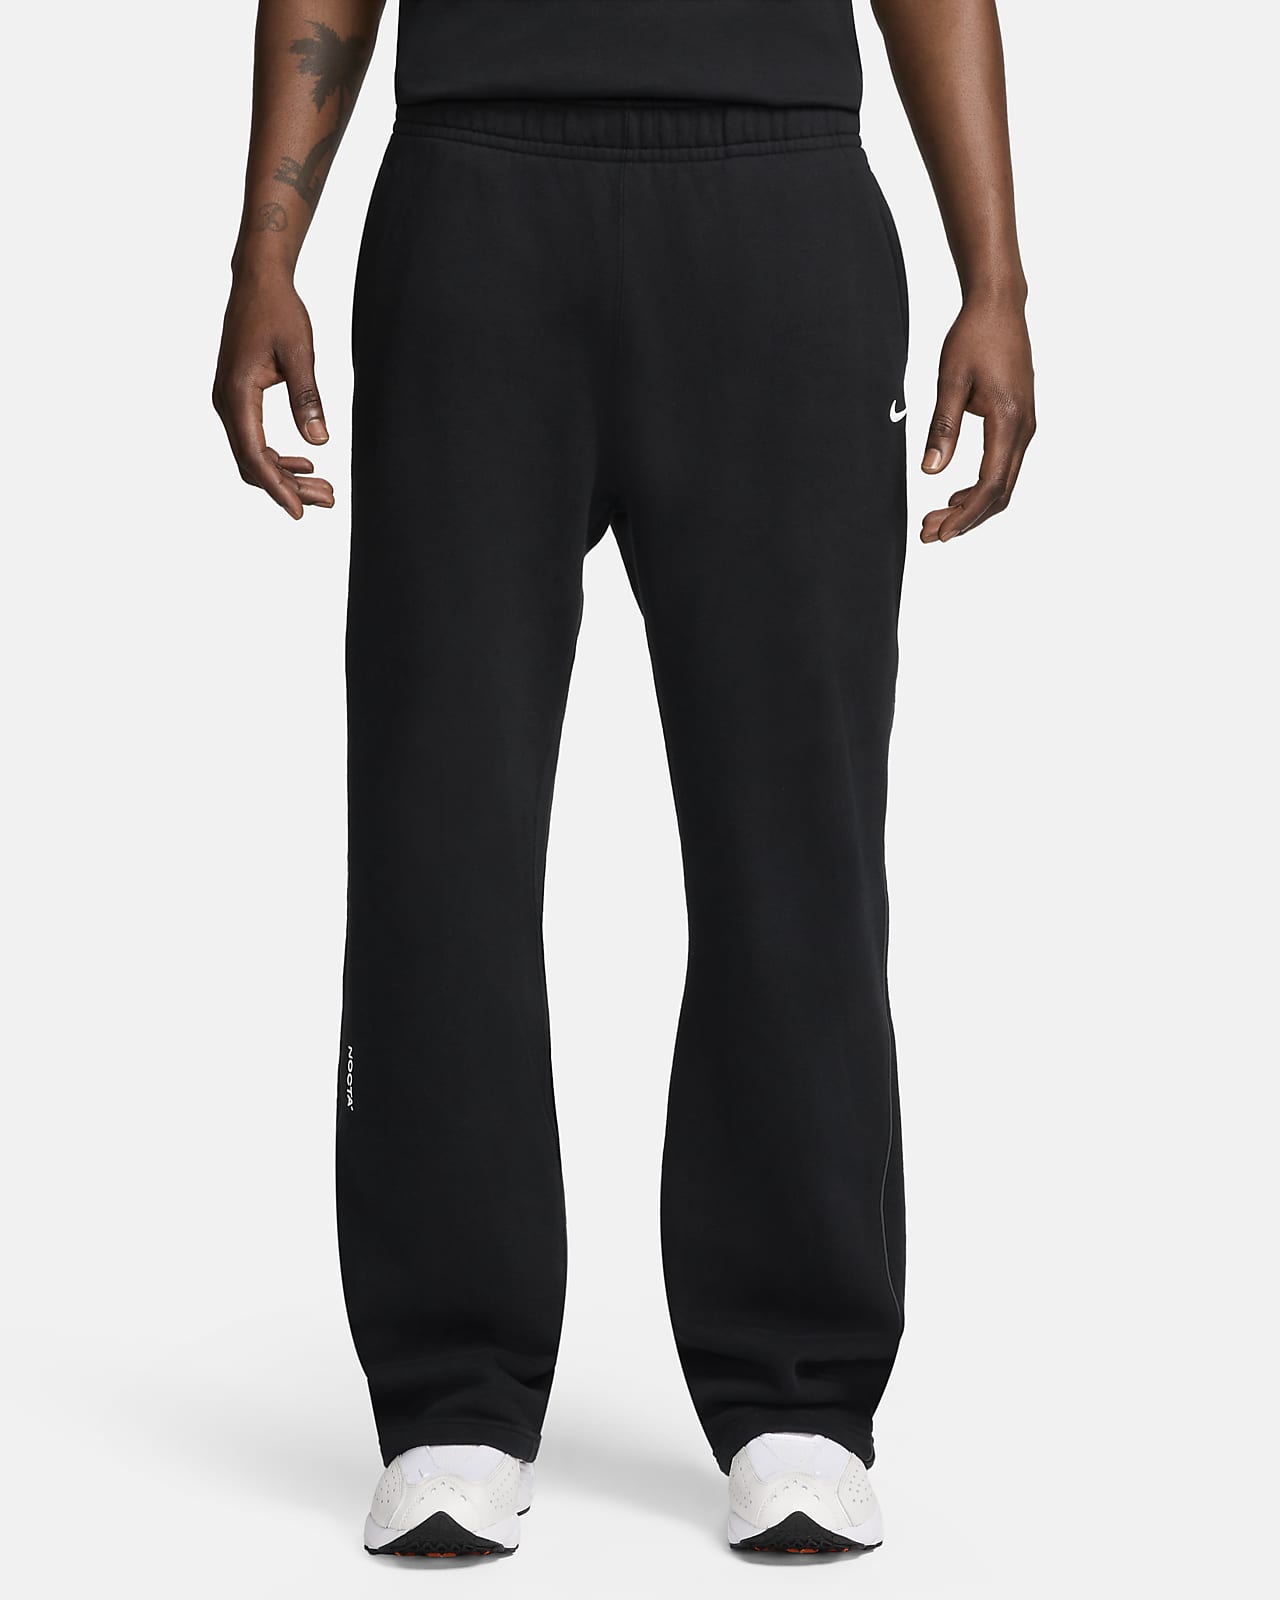 NOCTA NOCTA Fleece CS Open-Hem Sweatpants. Nike.com